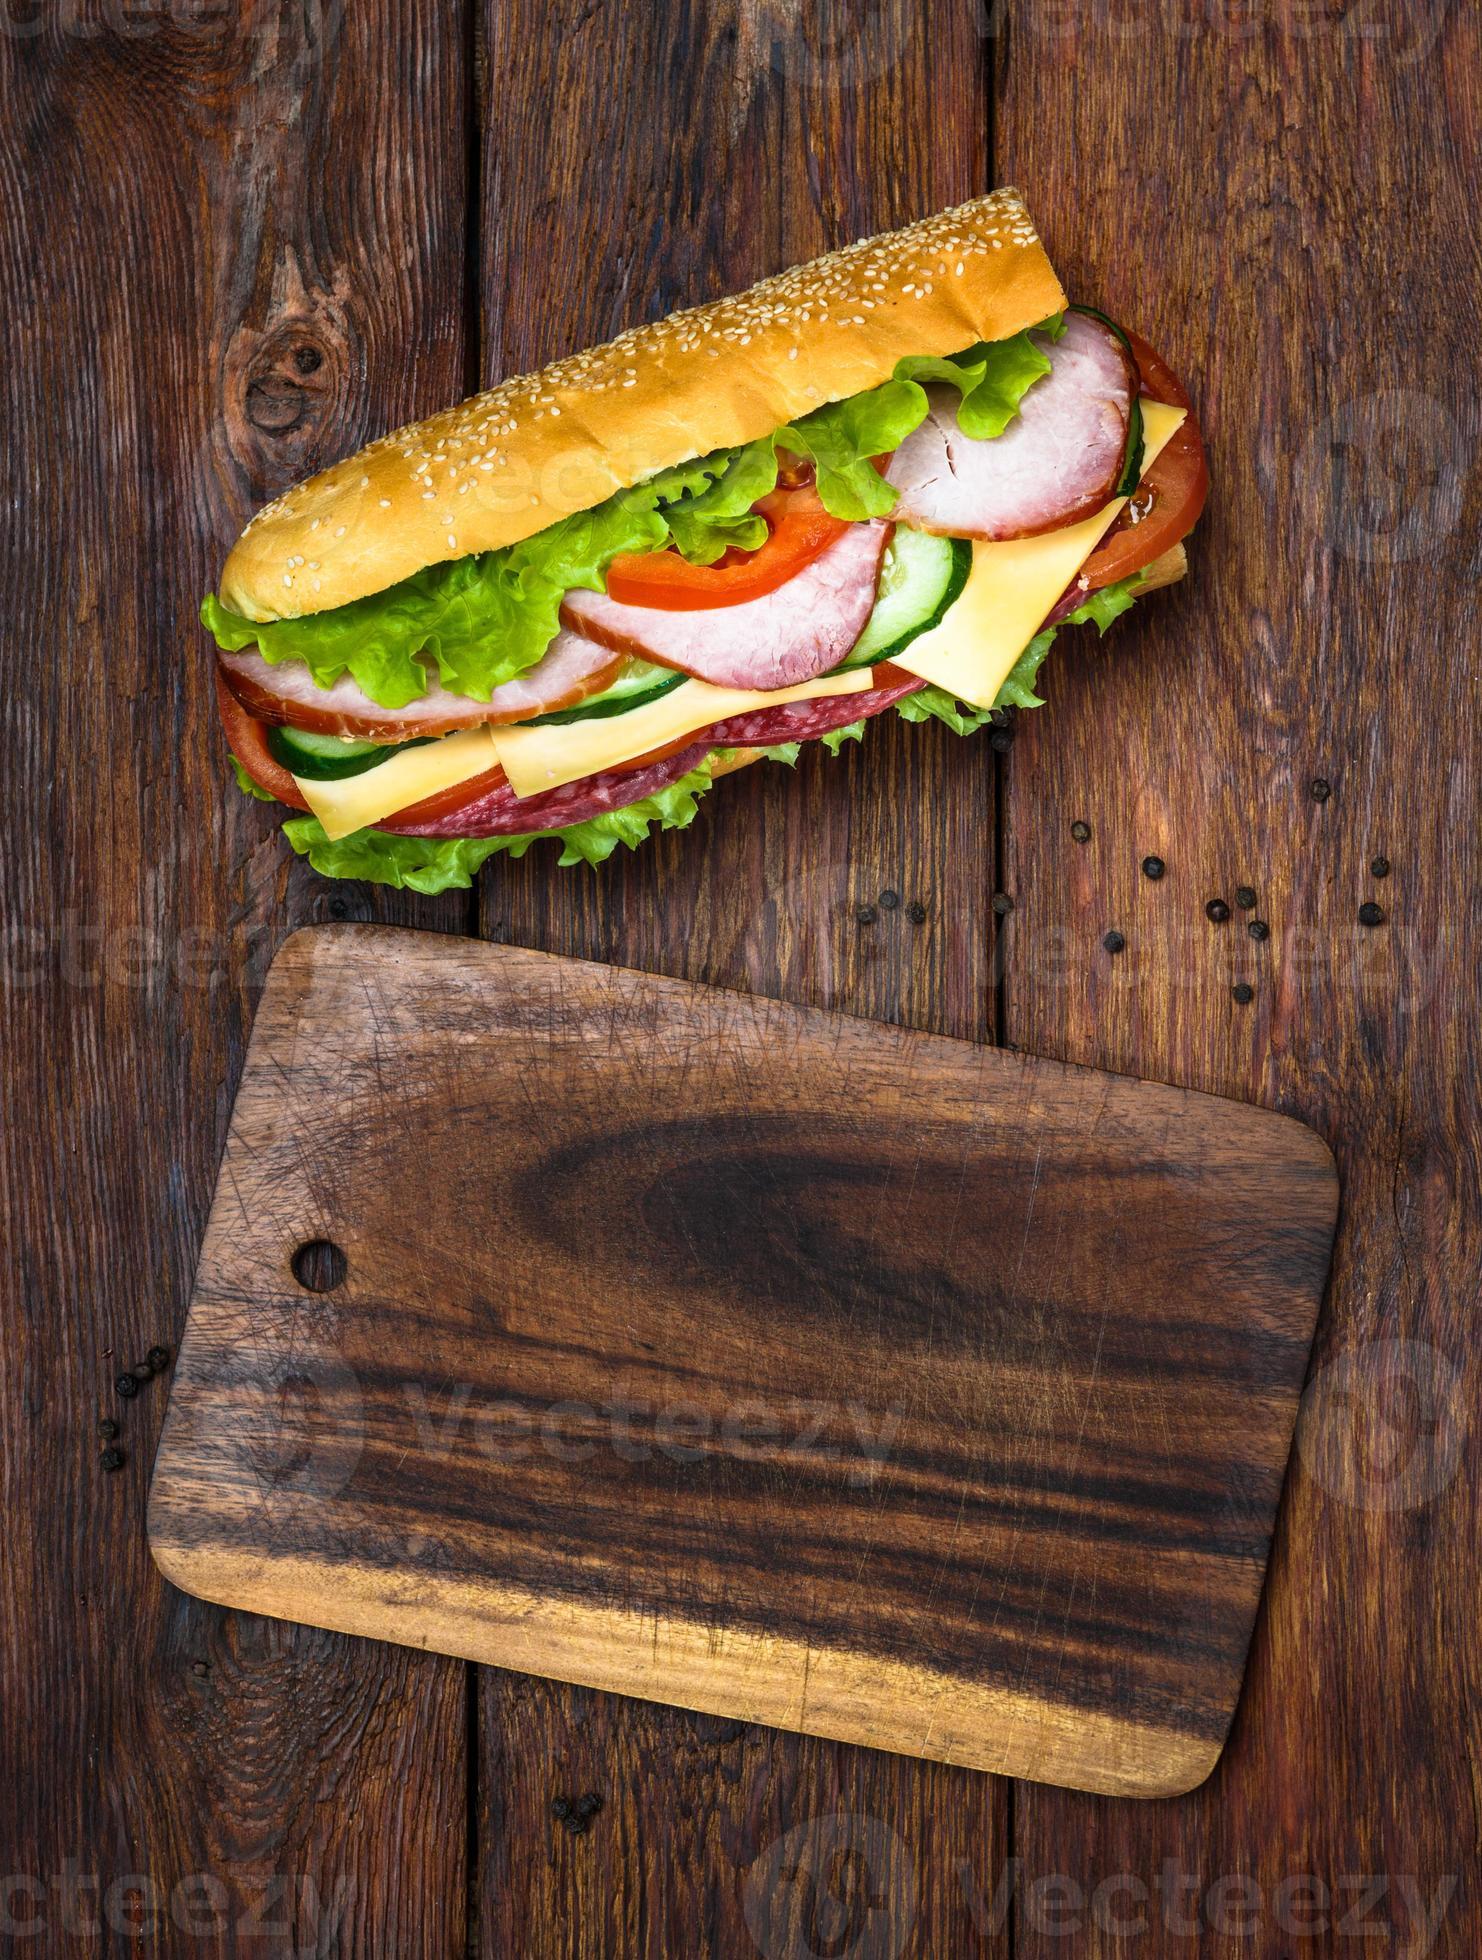 sandwich con salami, queso y verduras foto